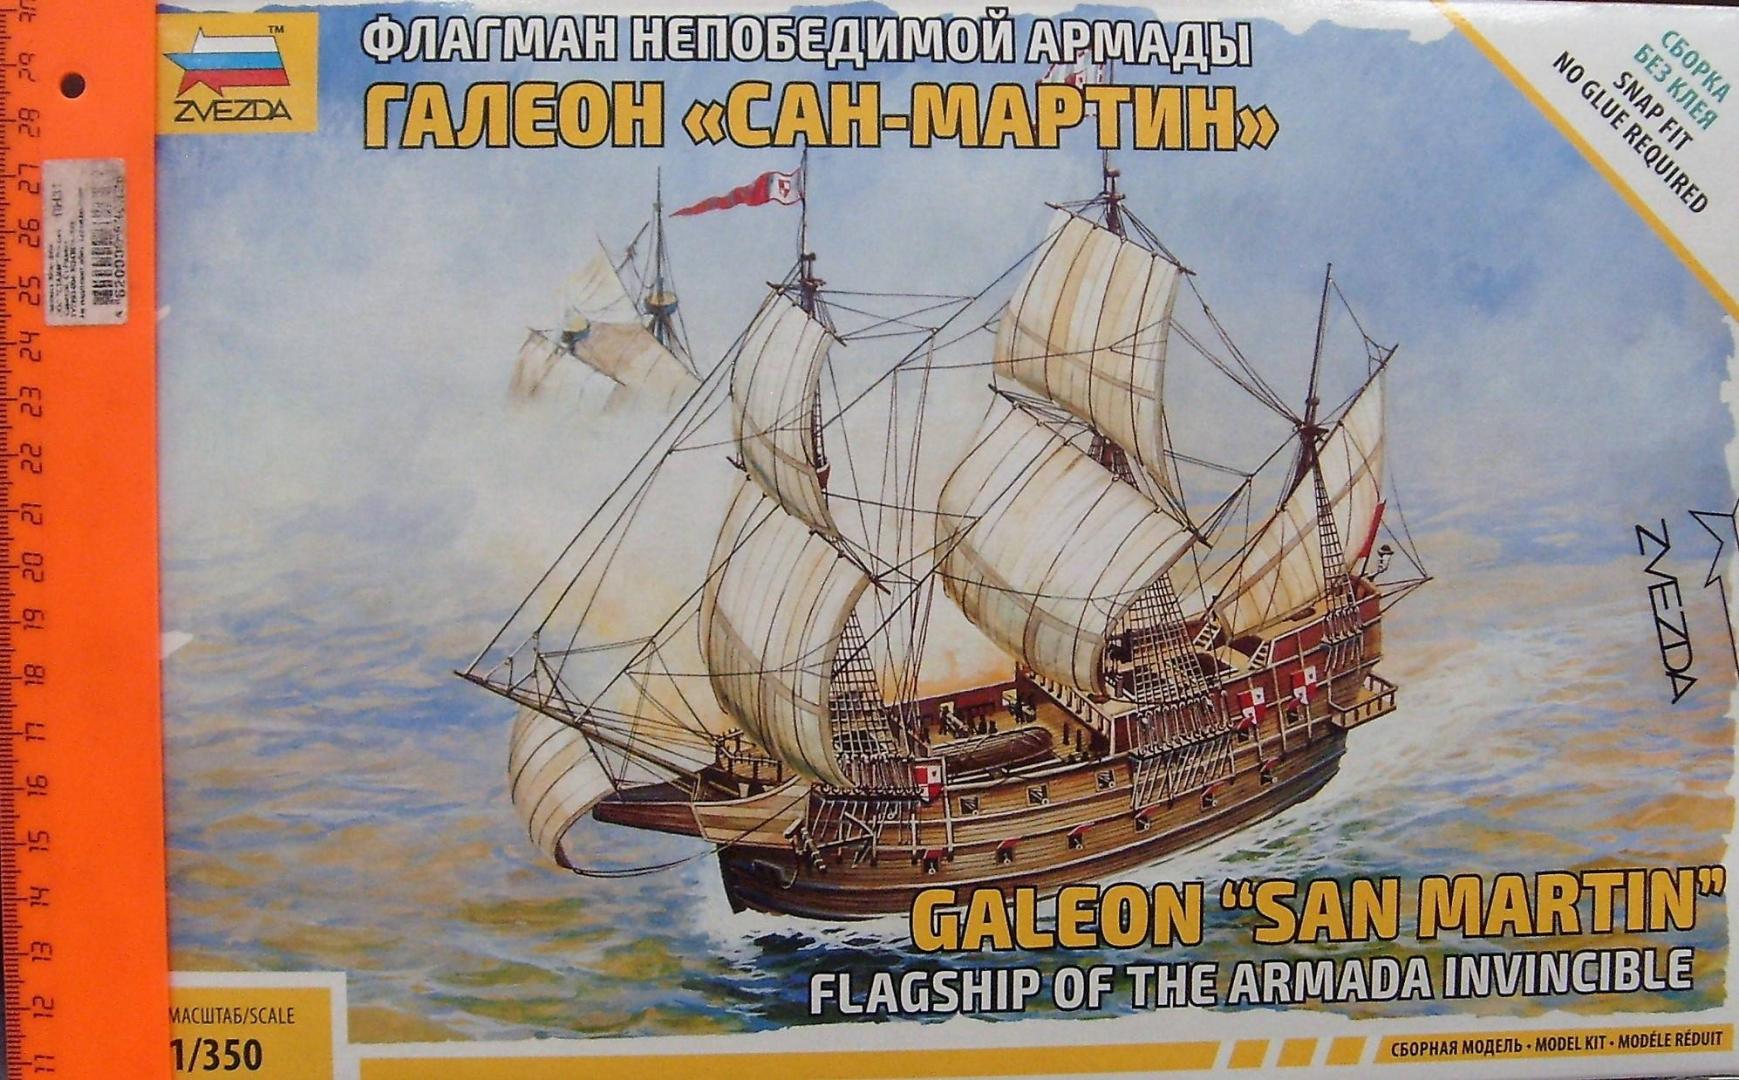 Иллюстрация 23 из 24 для Флагман Непобедимой армады галеон "Сан Мартин" (6502) | Лабиринт - игрушки. Источник: Соловьев  Владимир